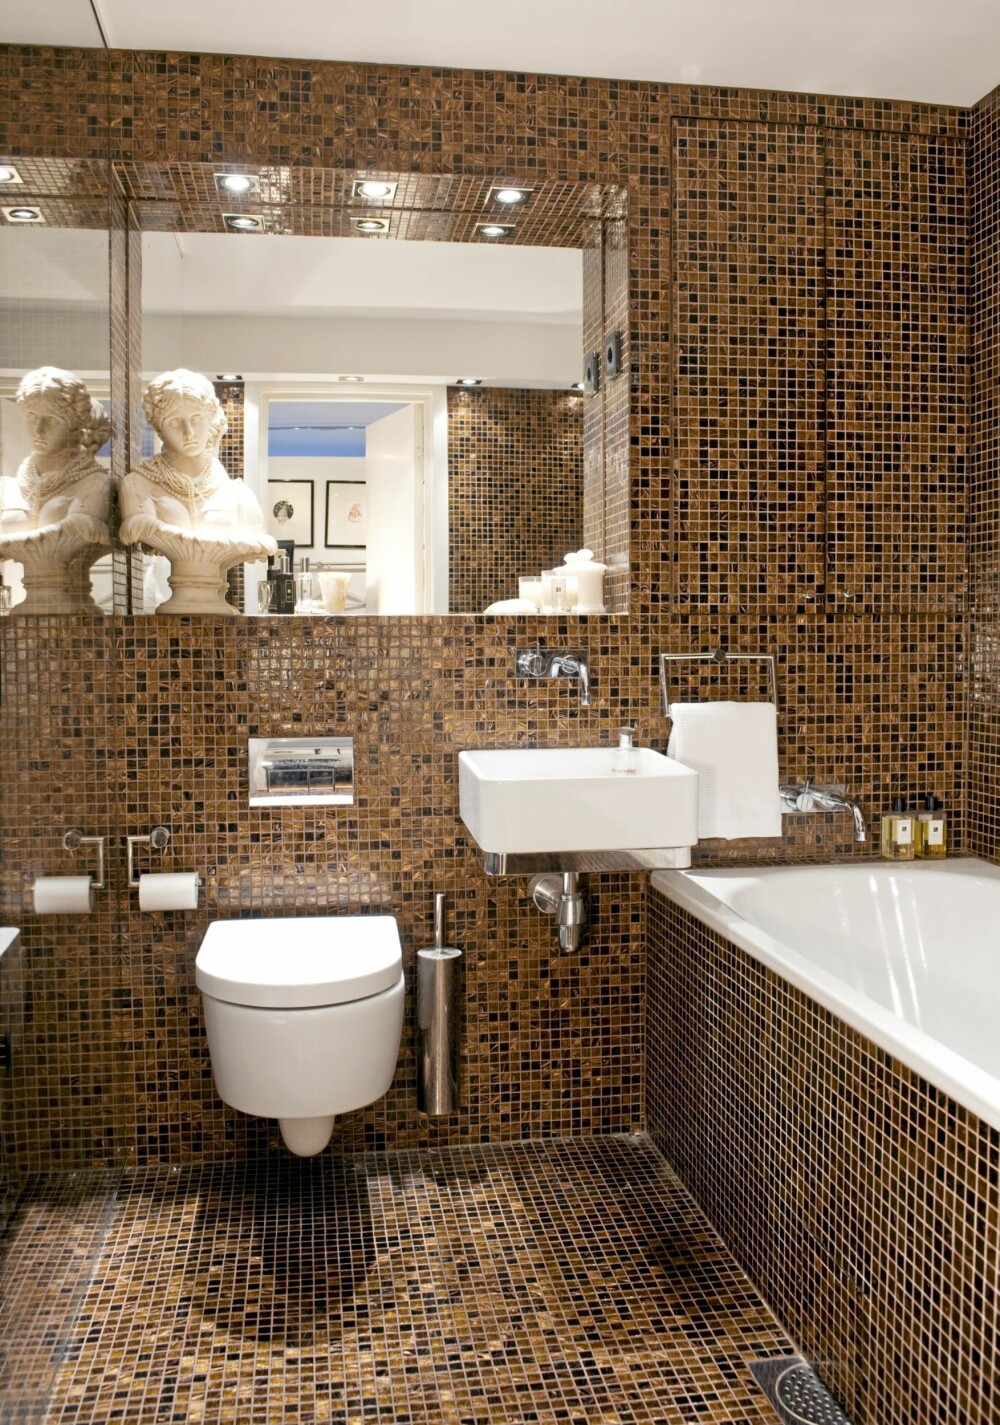 HULEFØLELSE. Hele baderommet er flisebelagt med brun mosaikk med gull fra Flisekompaniet. Det innebygde skapet ved siden av speilet er kamuflert av fliser. Speilet er som et vindu i rommet.